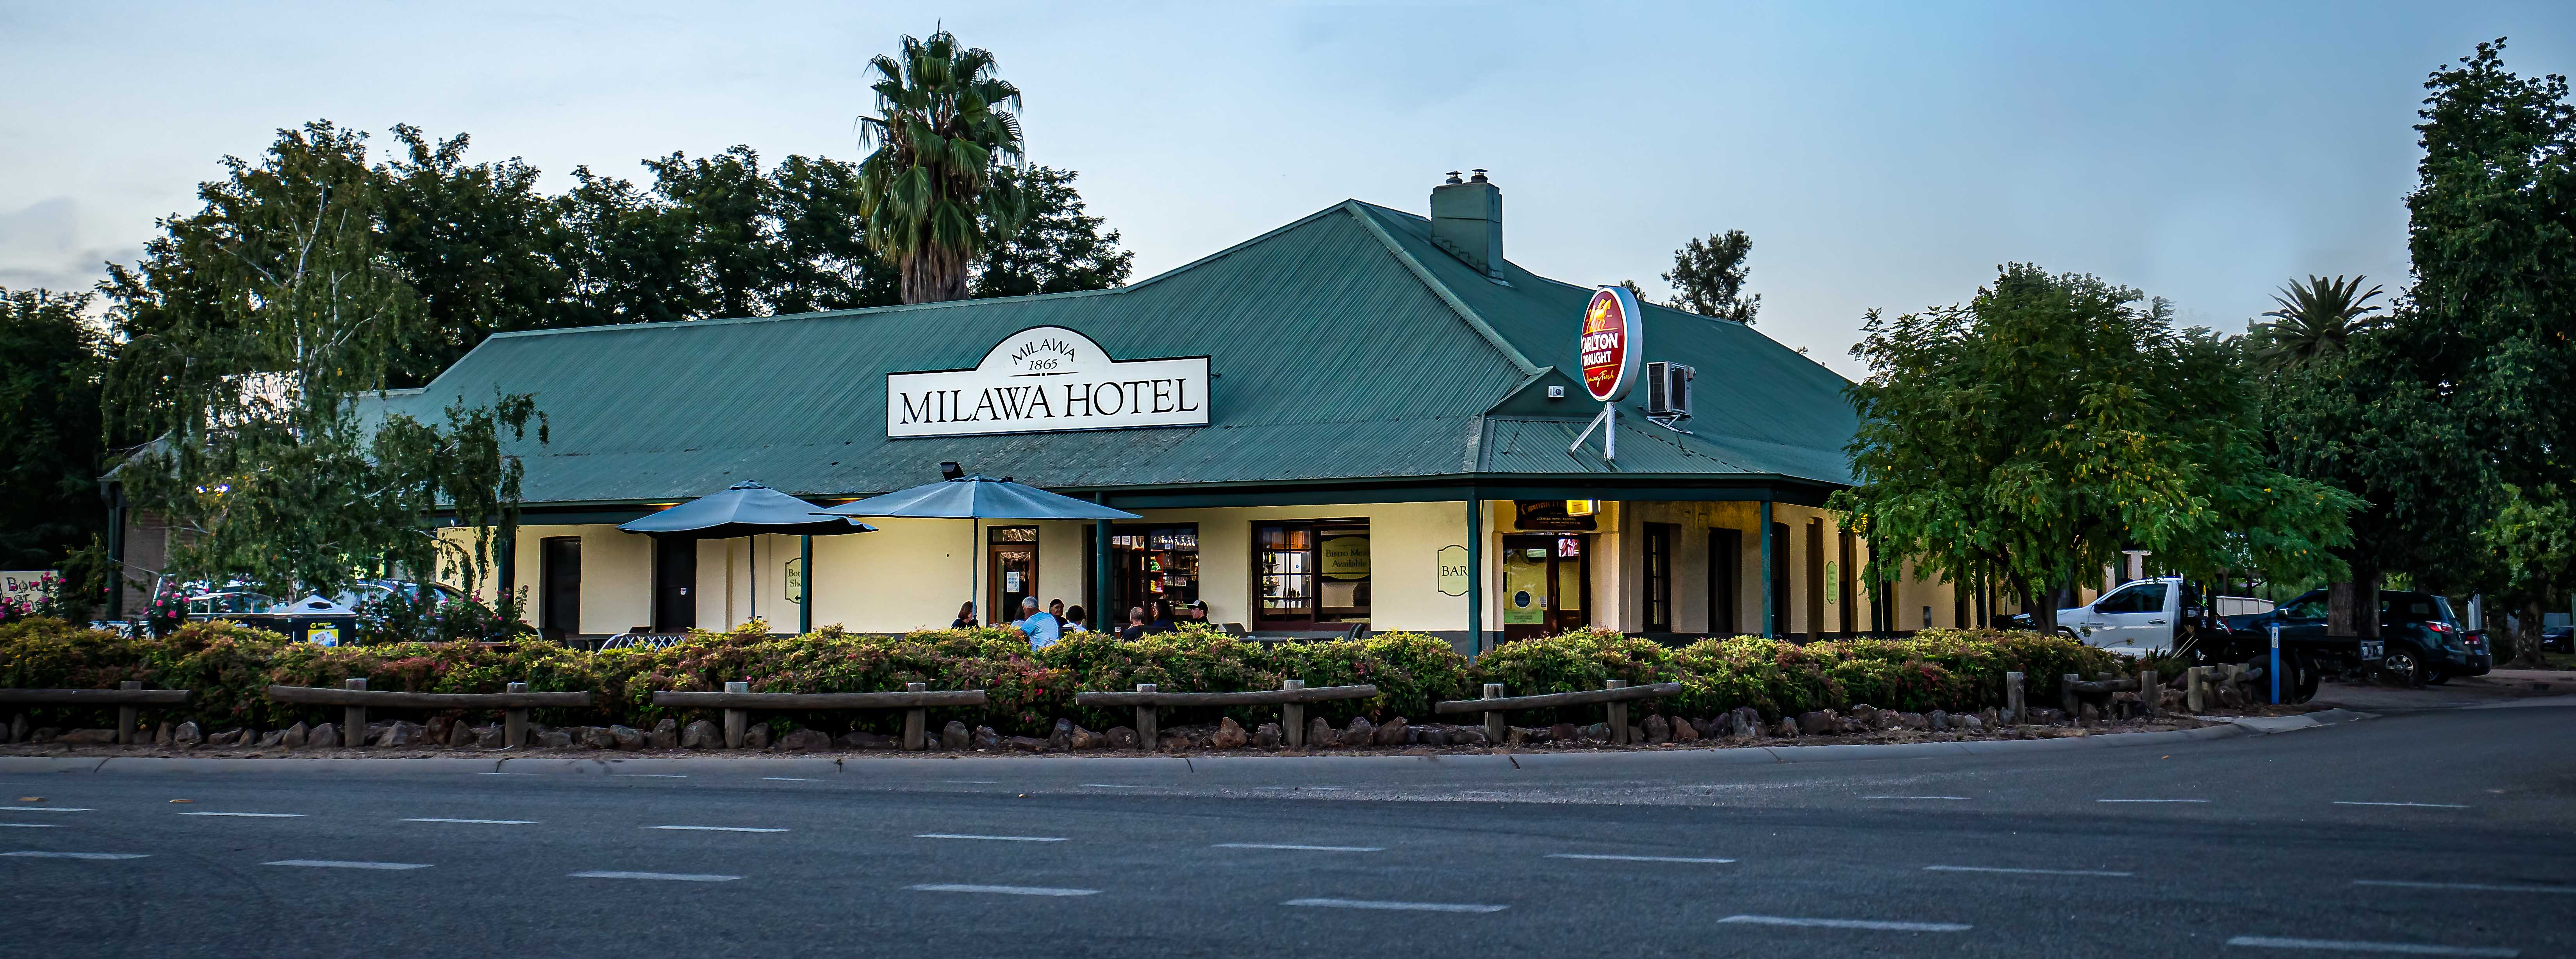 Milawa Hotel and drive through bottleshop | bar | Milawa Hotel, 1591 Snow Rd, Milawa VIC 3678, Australia | 0357273208 OR +61 3 5727 3208